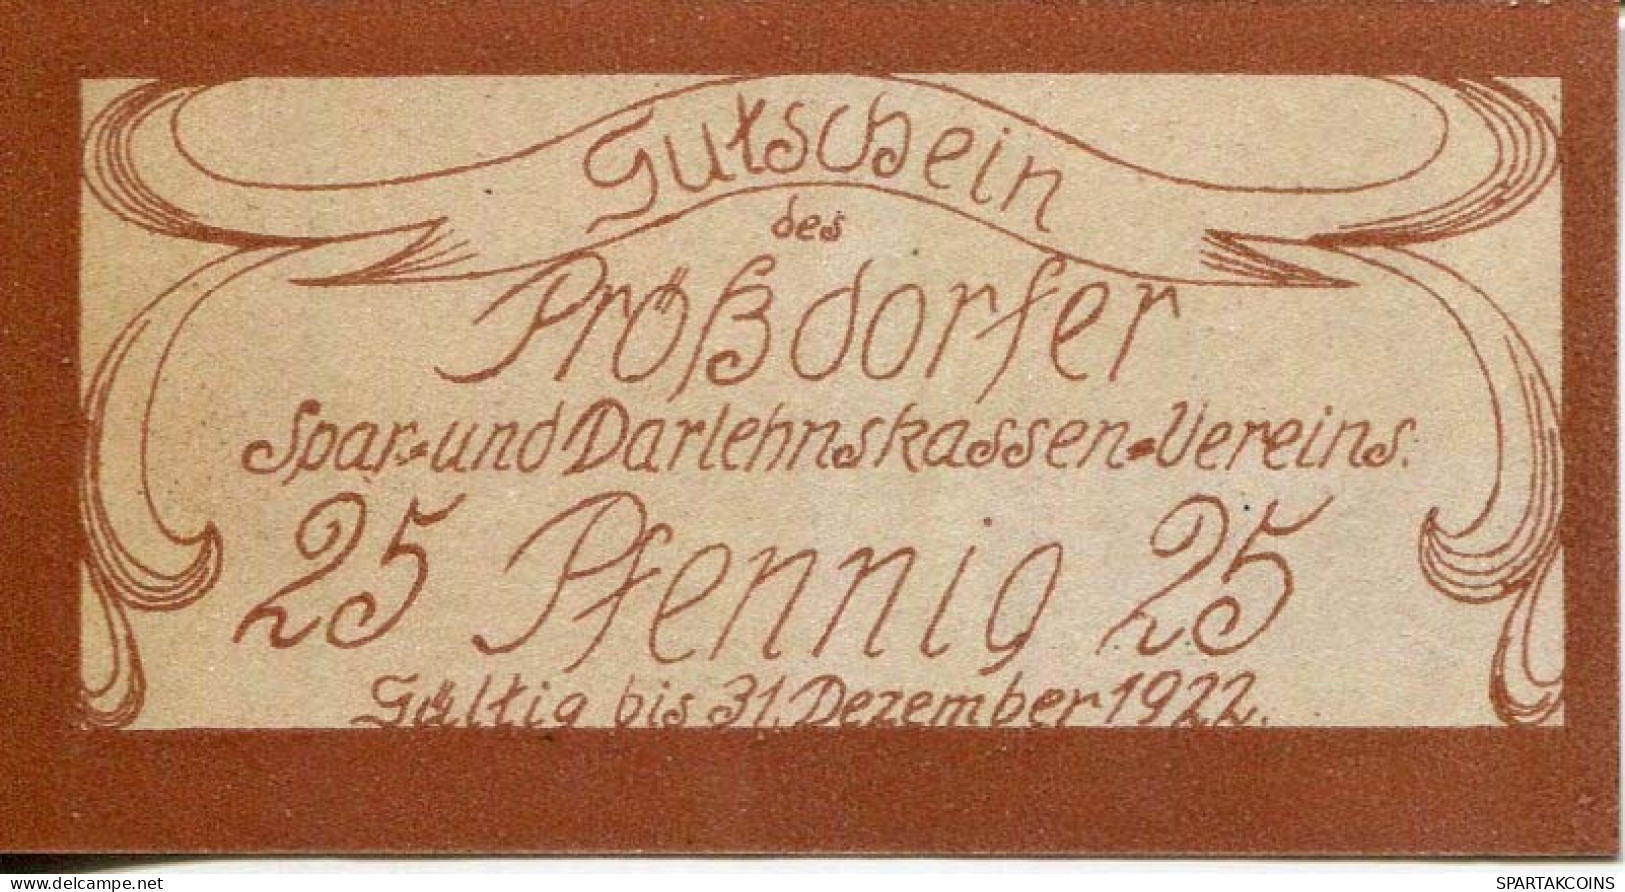 25 PFENNIG 1922 Stadt PRoSSDORF Thuringia DEUTSCHLAND Notgeld Papiergeld Banknote #PL924 - [11] Local Banknote Issues